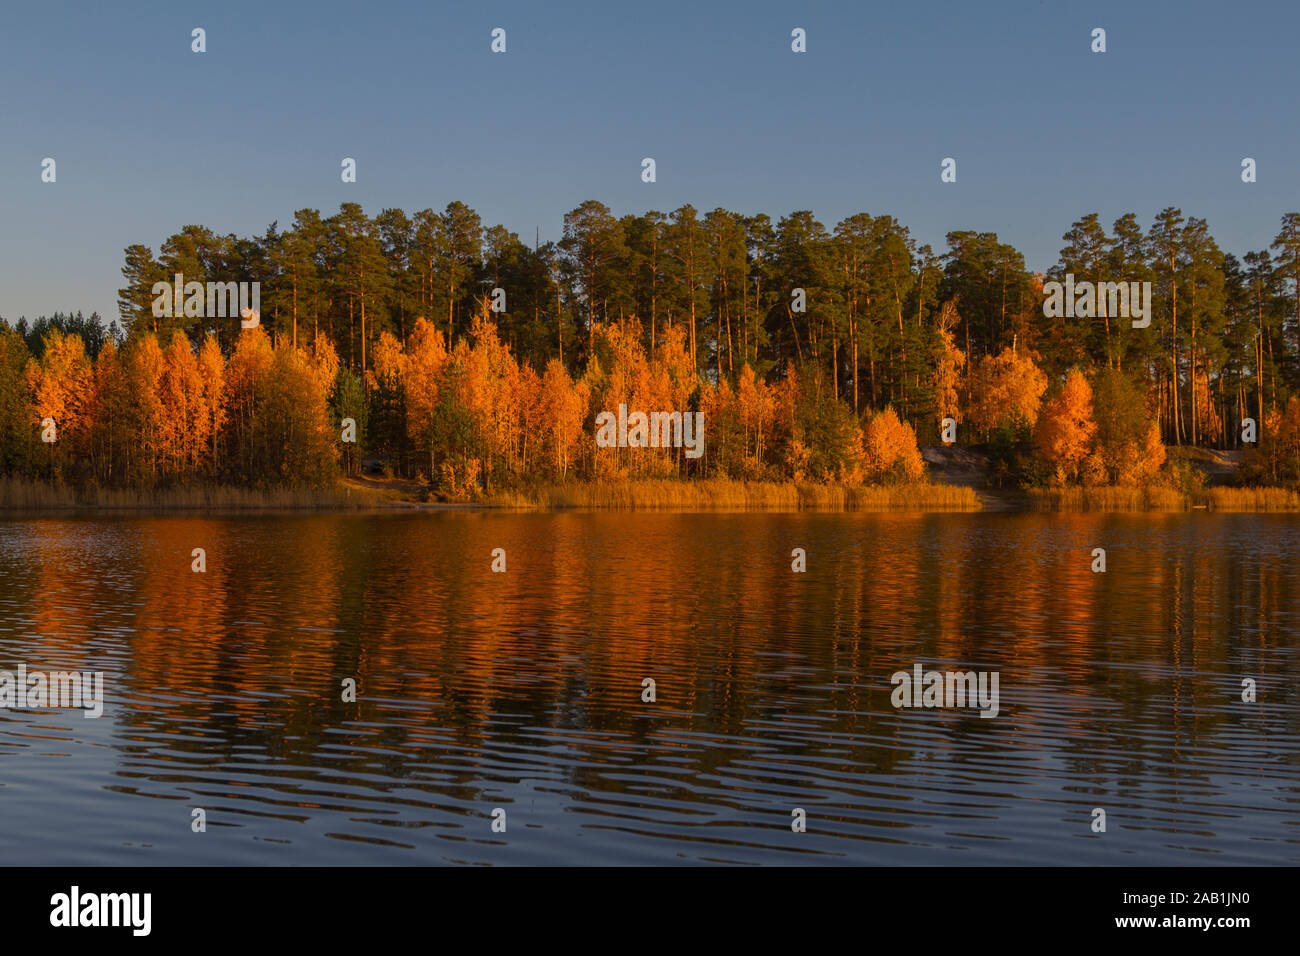 Scène pittoresque de la forêt de l'automne sur la rive du lac dans les rayons de soleil. Jaune Orange automne peintures lumineuses Banque D'Images